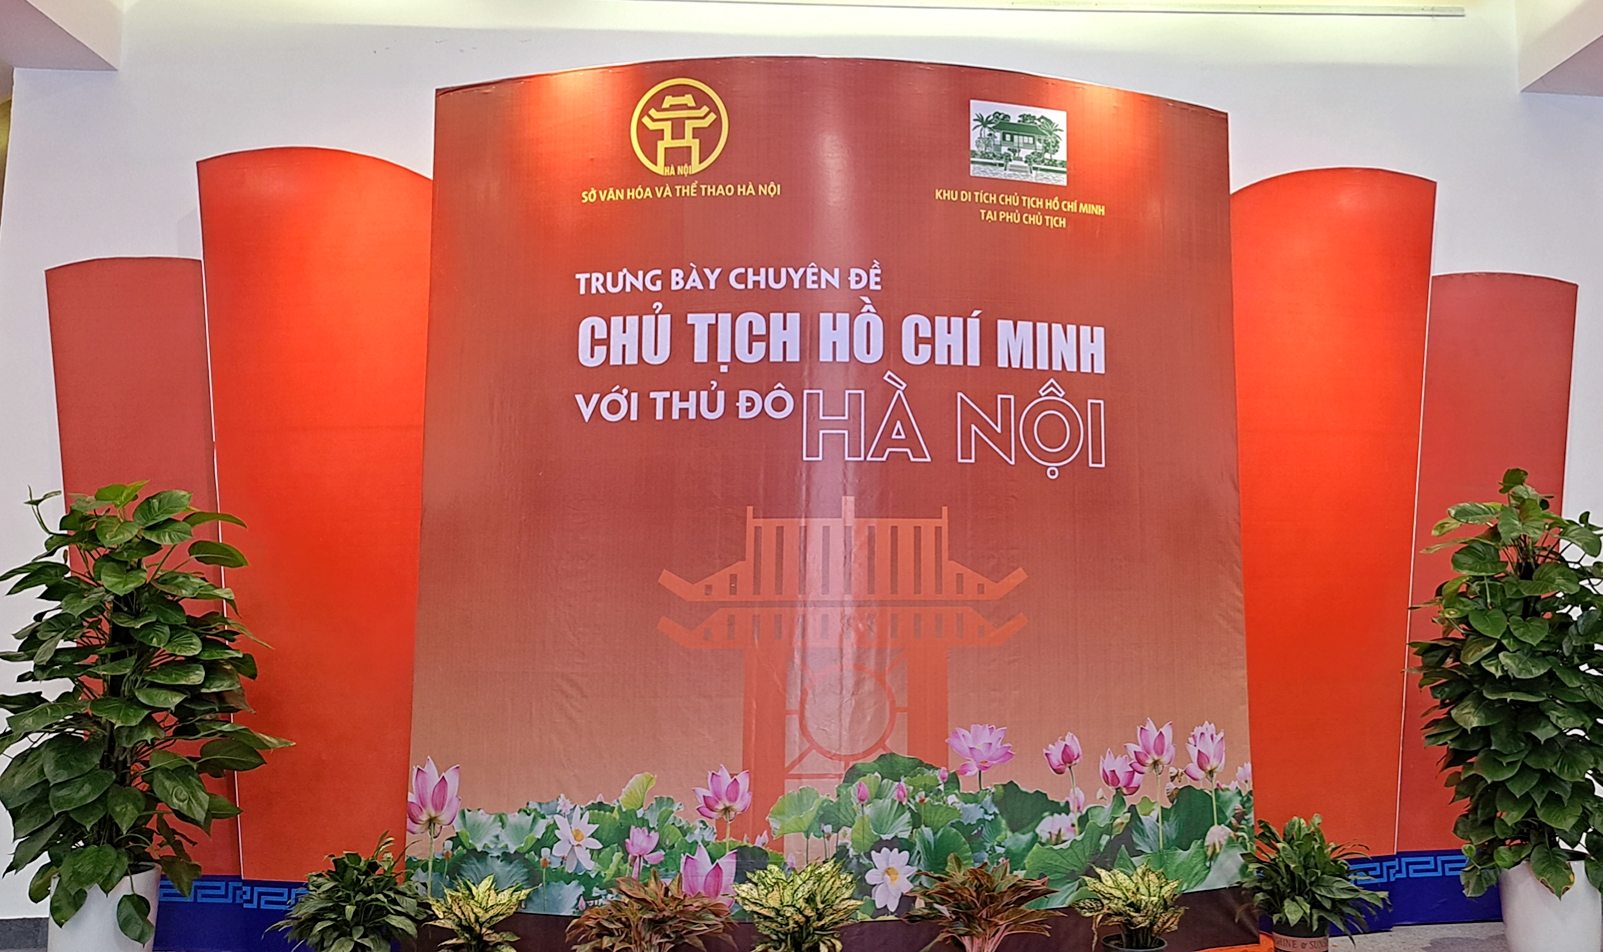 Nhiều tư liệu quý tại triển lãm ''Chủ tịch Hồ Chí Minh với Thủ đô Hà Nội” - 1